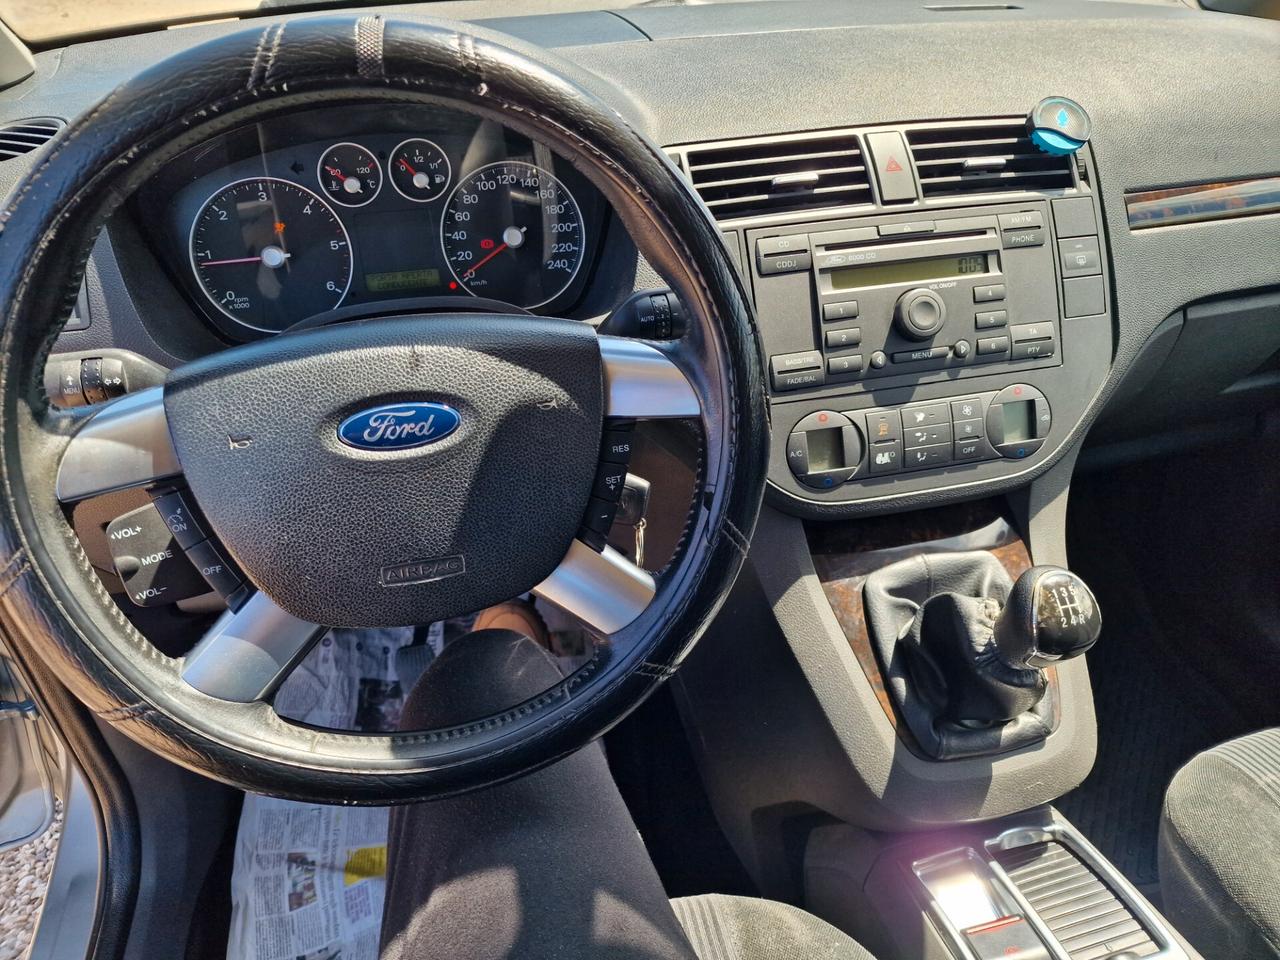 Ford Focus C-Max 1.6 TDCi (110CV)